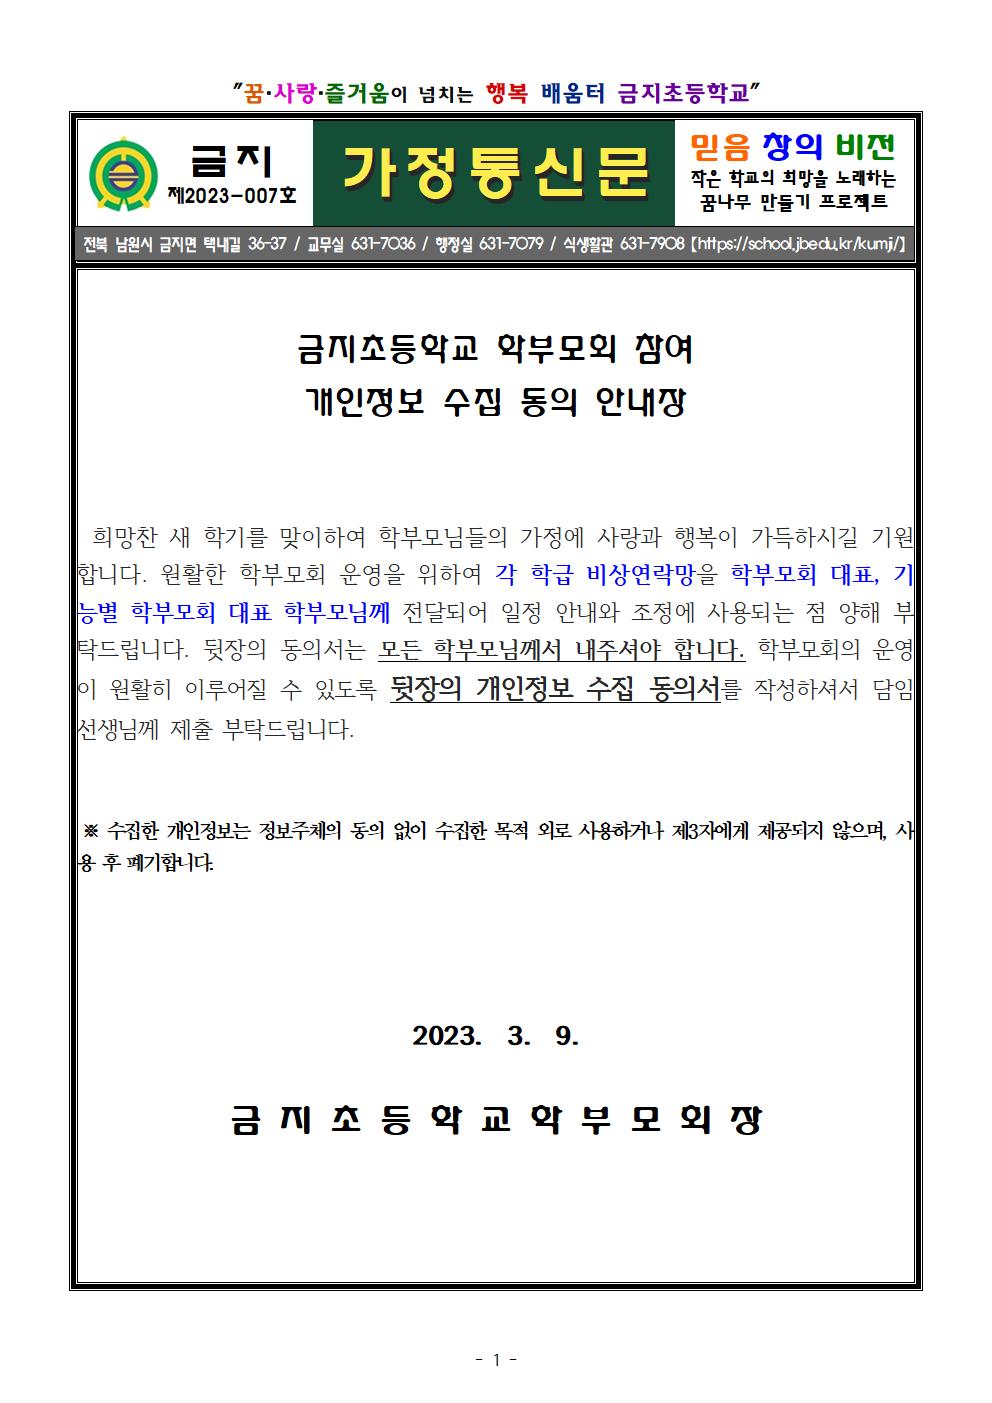 학부모회 참여 개인정보 수집 동의 안내장 (1)001